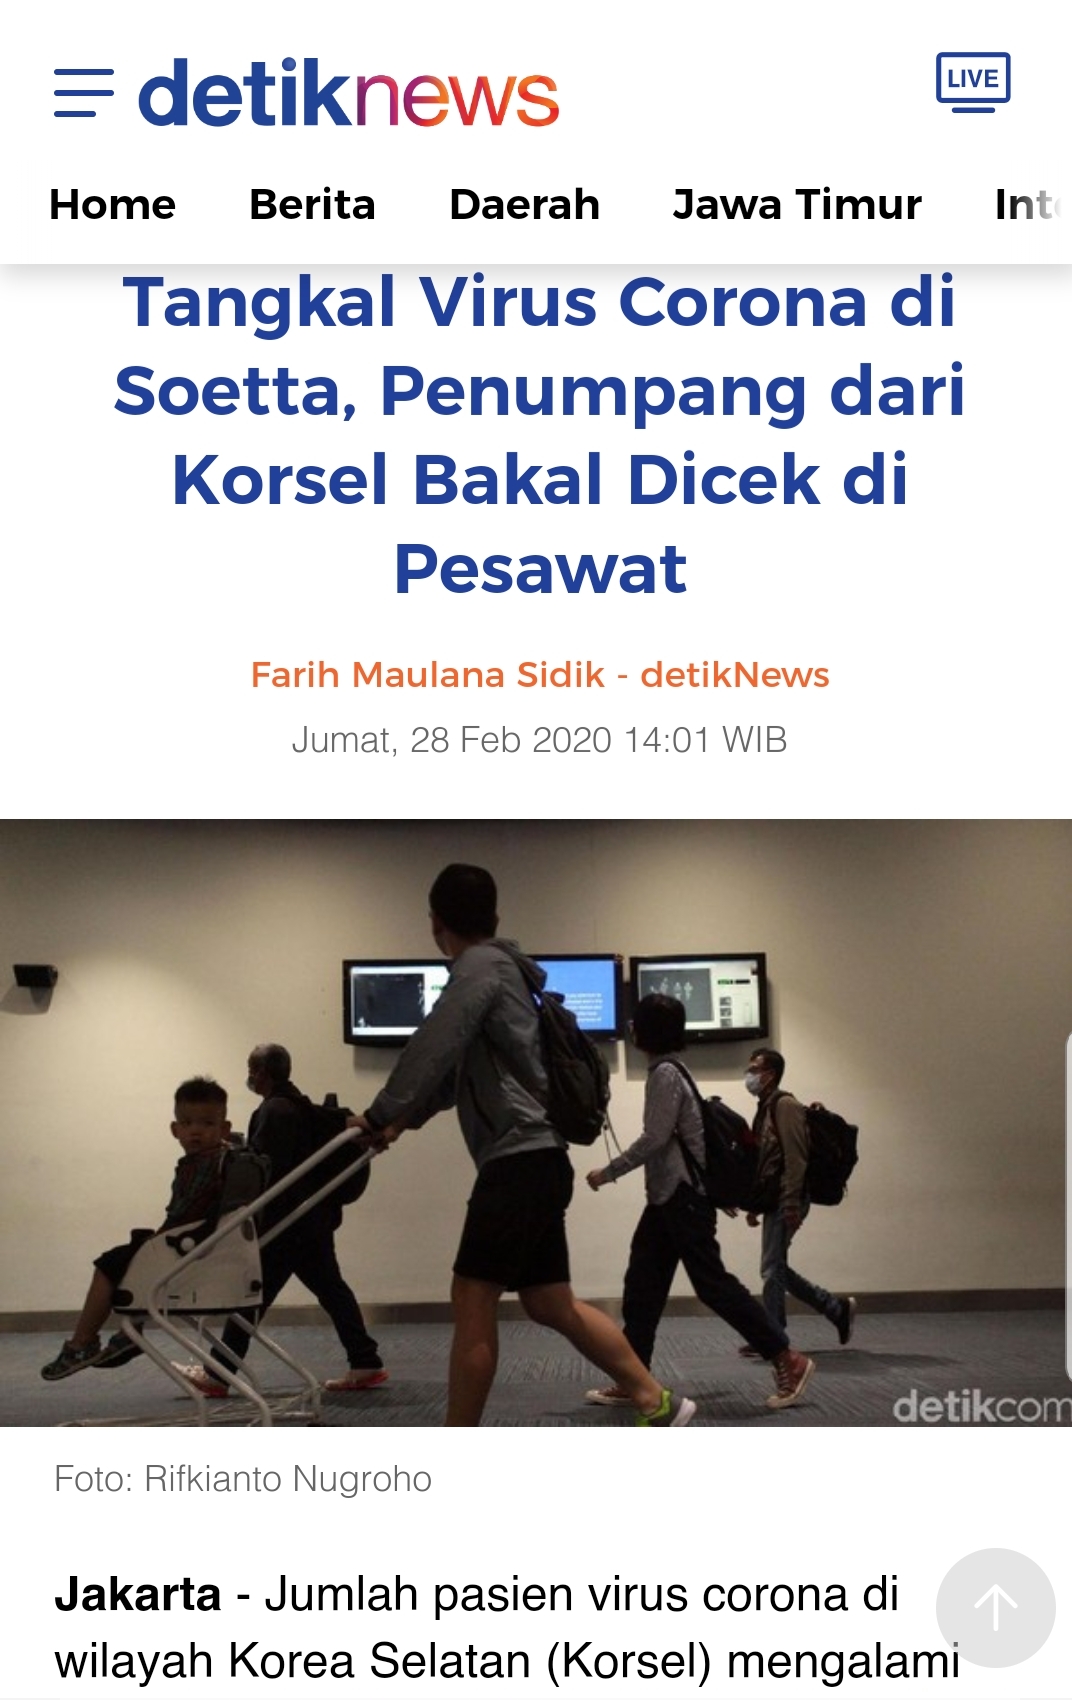 인도네시아 출입국 당국의 한국 탑승자에 대한 검역이 강화되었다는 현지 언론 보도